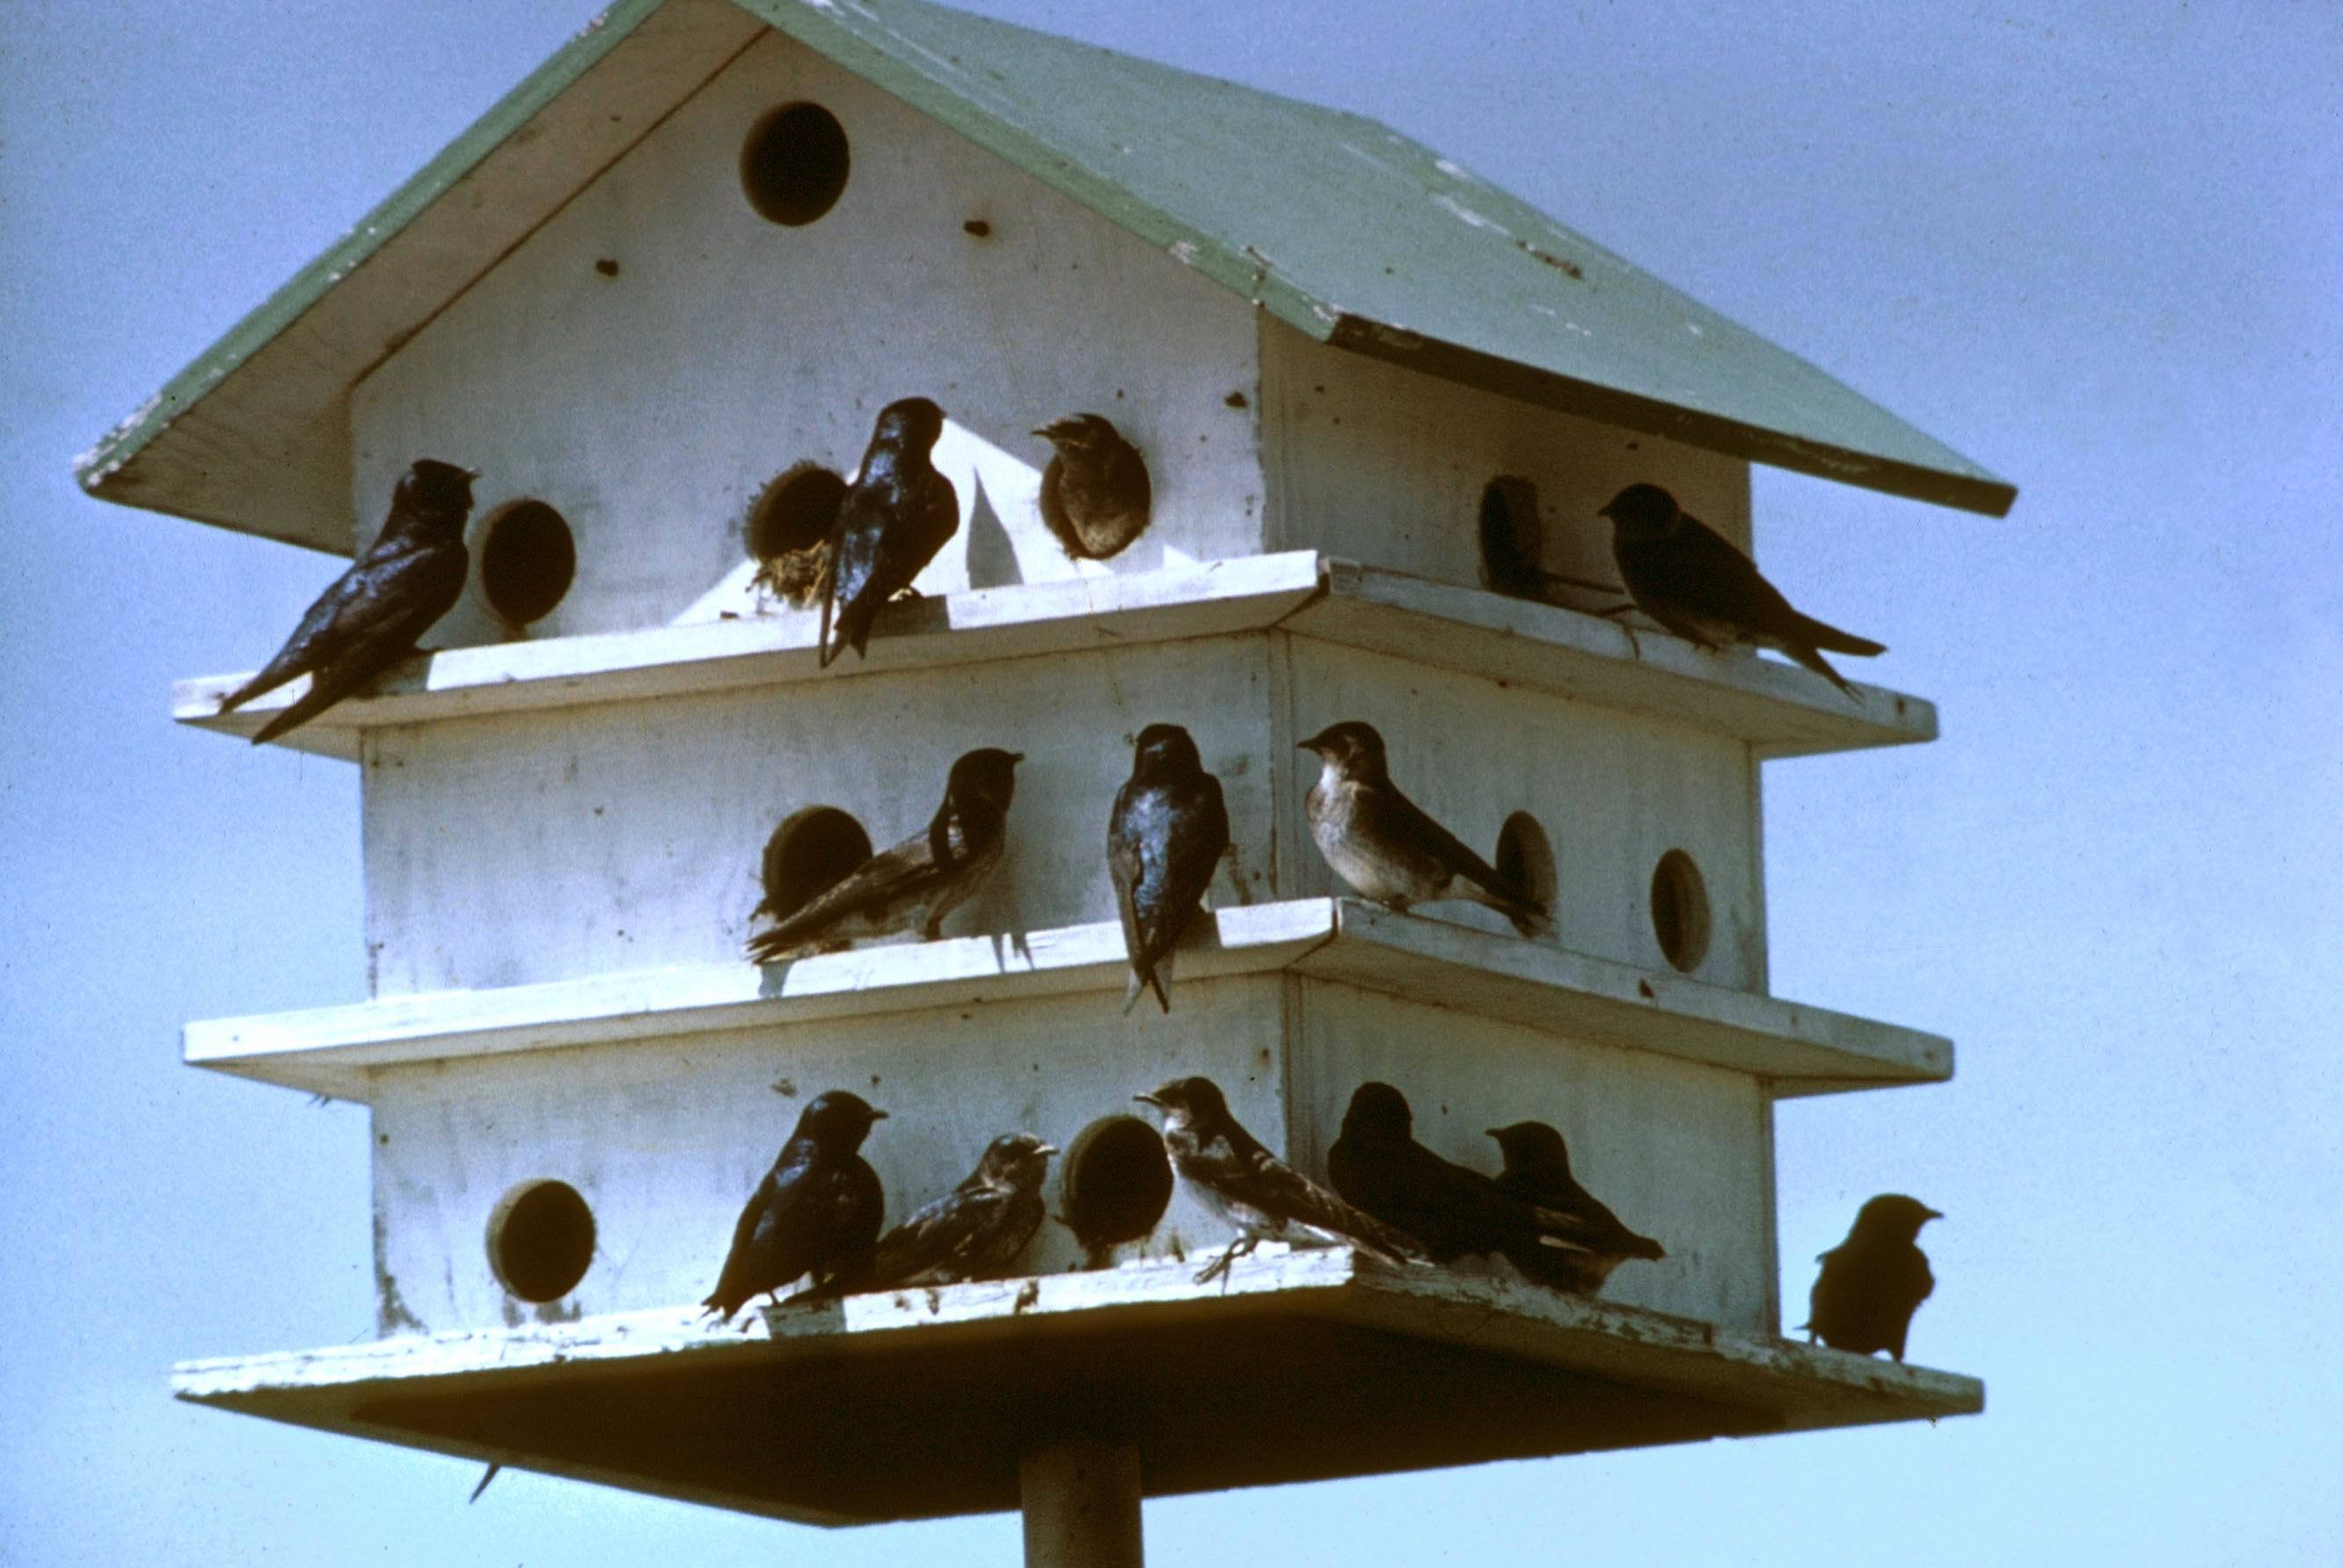 The birdhouse photo